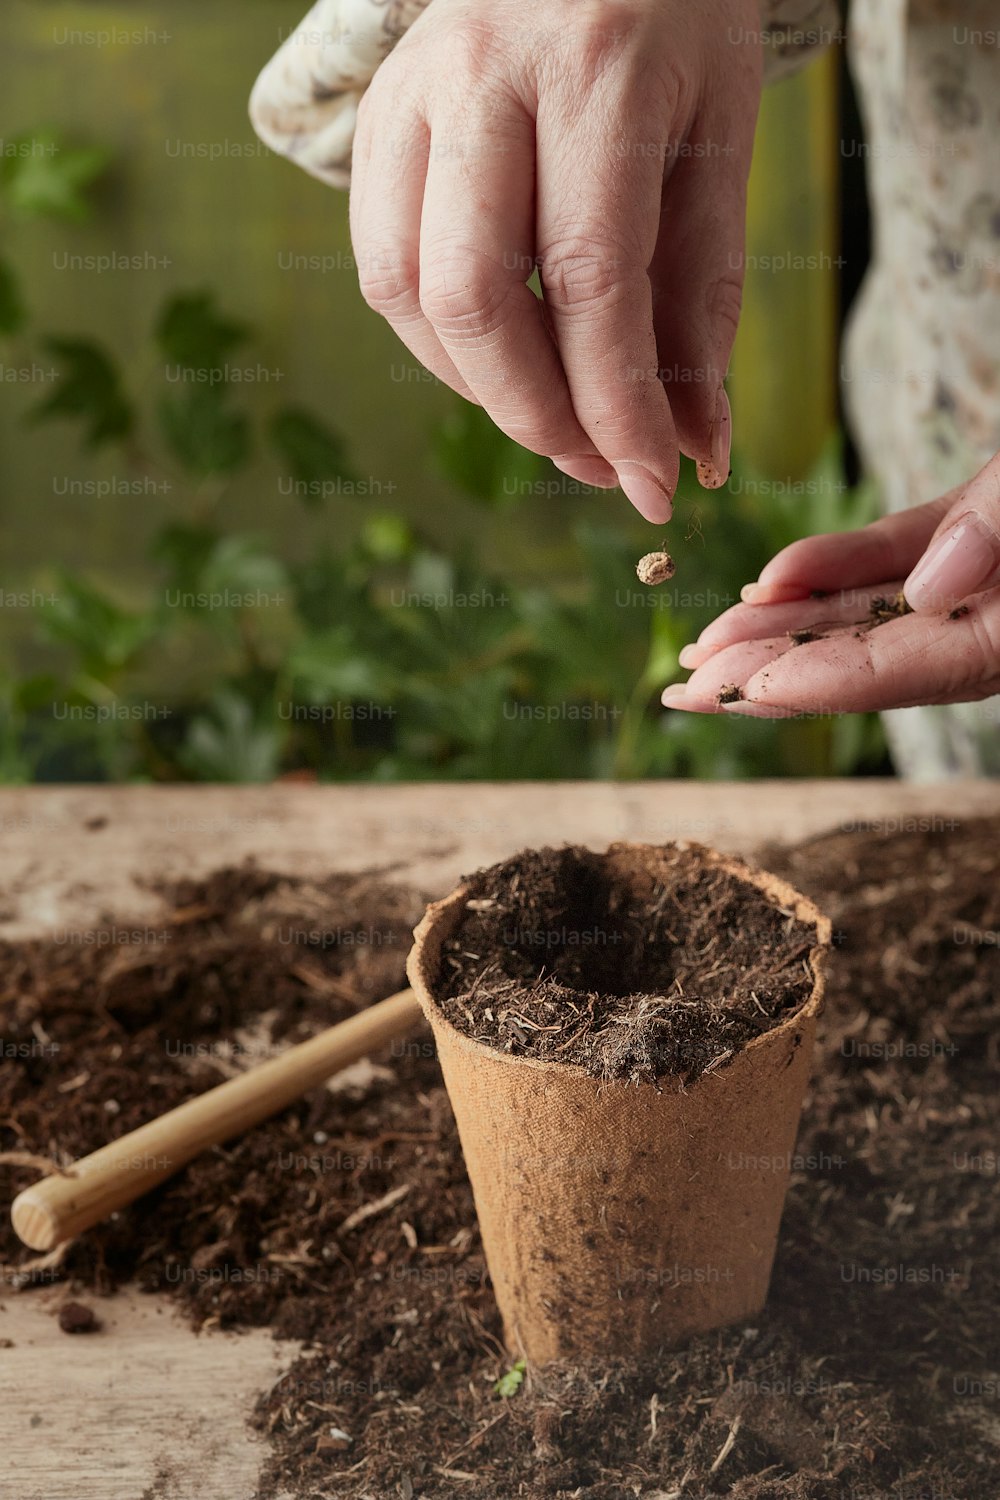 una persona poniendo semillas en una planta en maceta